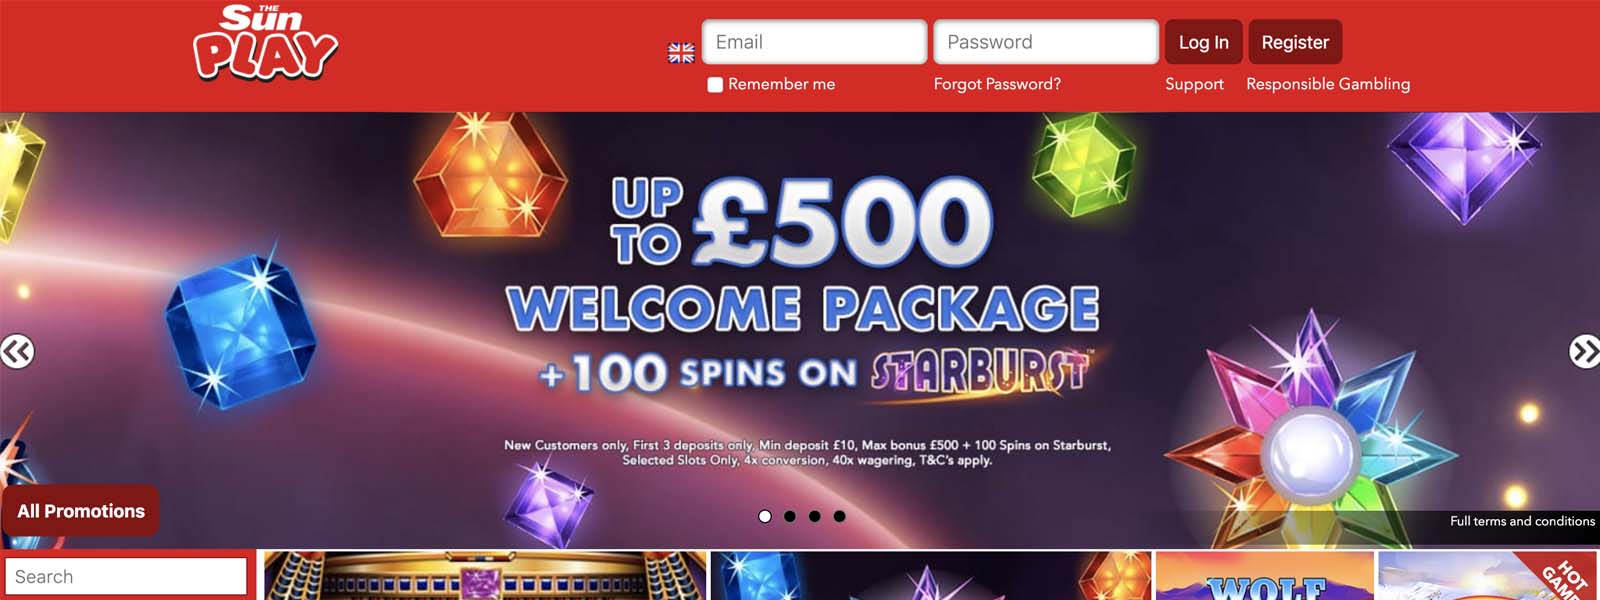 Sun Play Casino Homepage